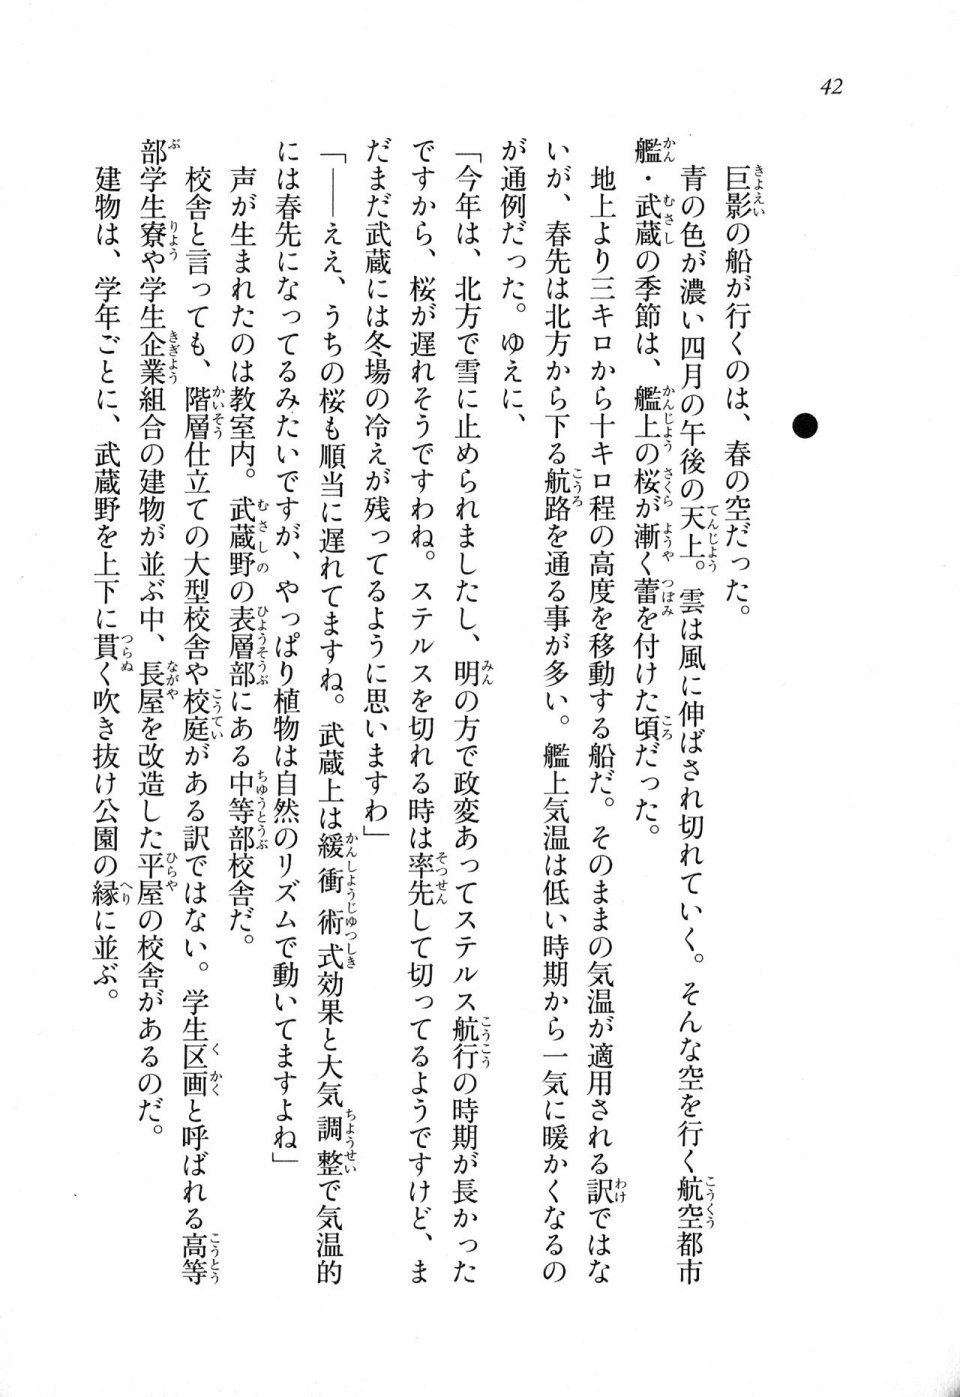 Kyoukai Senjou no Horizon LN Sidestory Vol 1 - Photo #40